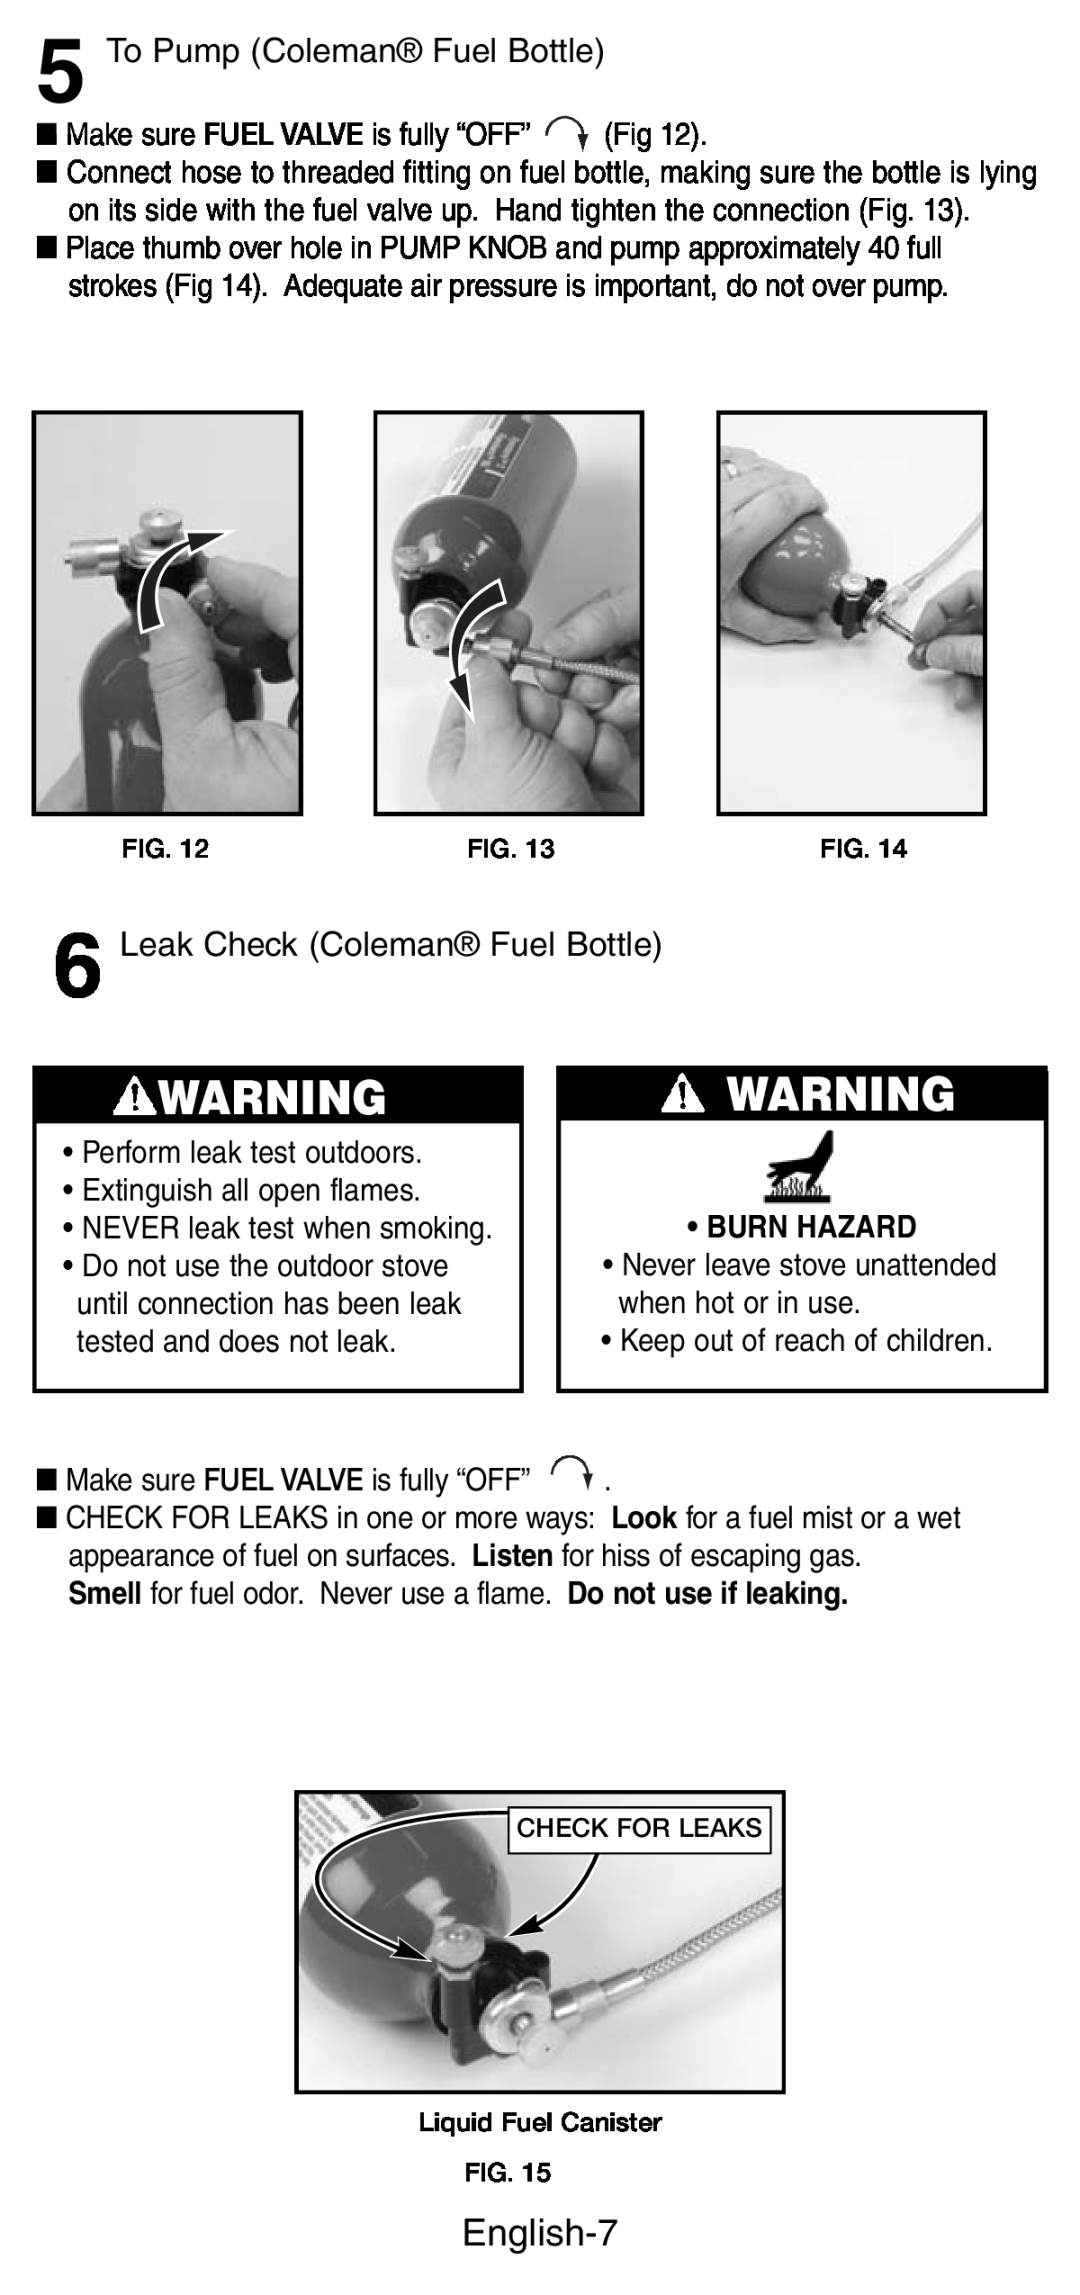 Coleman 9775, 9770 manual English-7, To Pump Coleman Fuel Bottle, Leak Check Coleman Fuel Bottle, Burn Hazard 